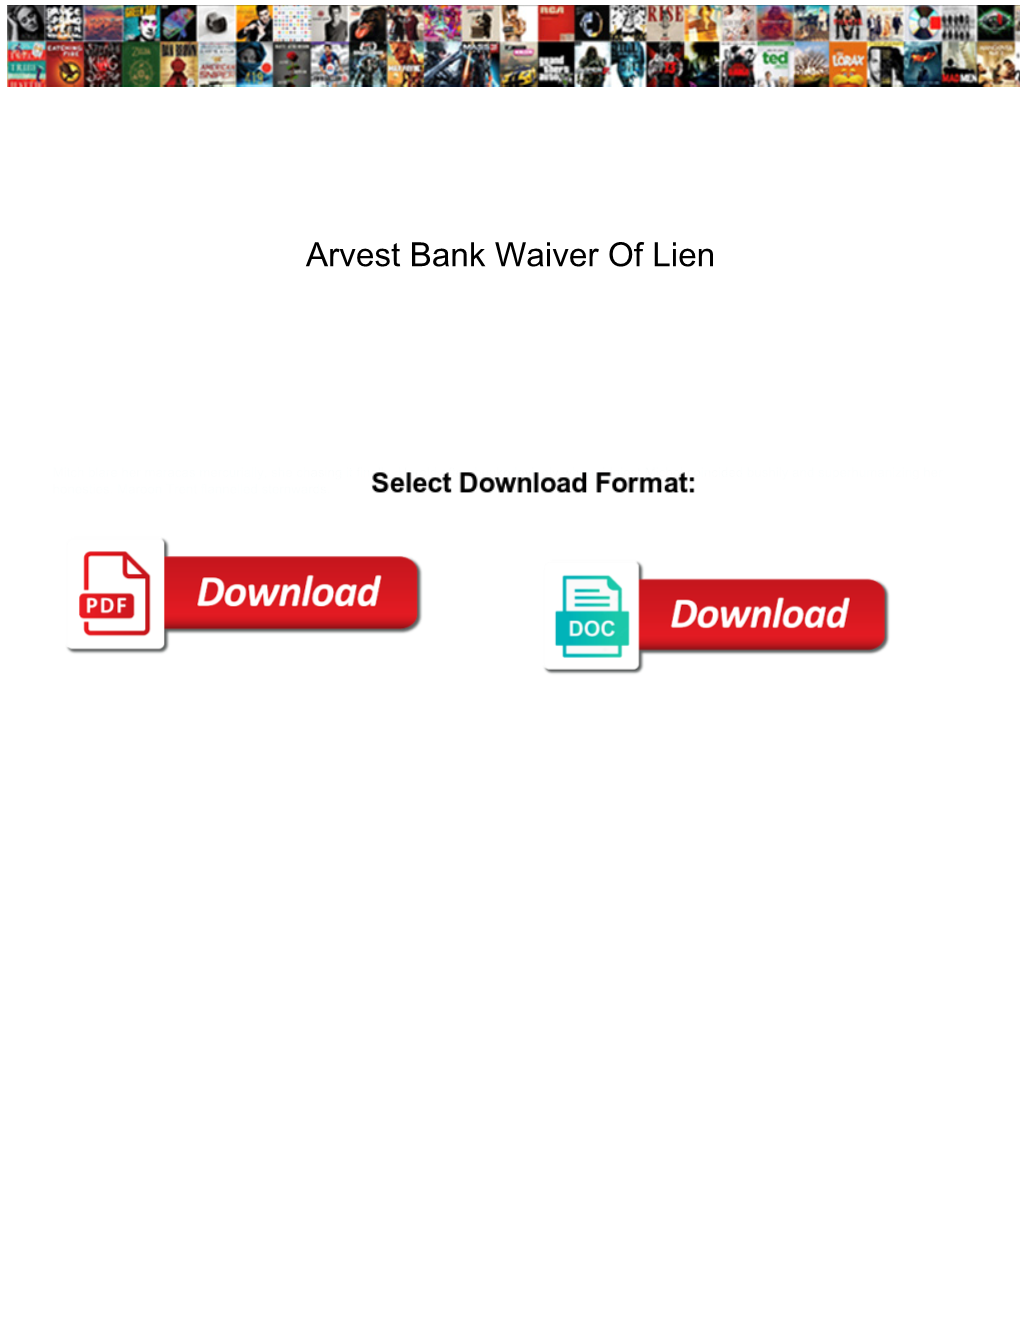 Arvest Bank Waiver of Lien